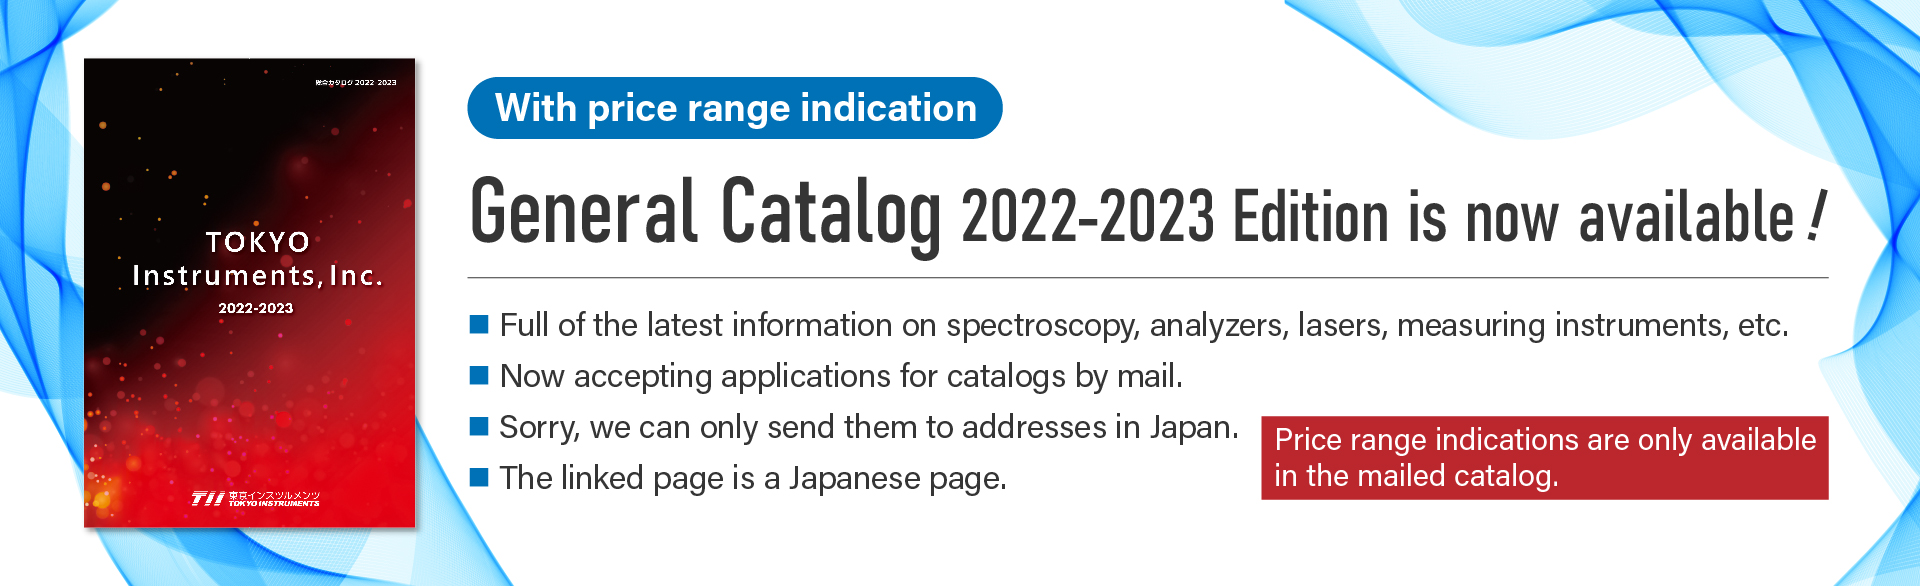 General Catalog 2022-2023 published